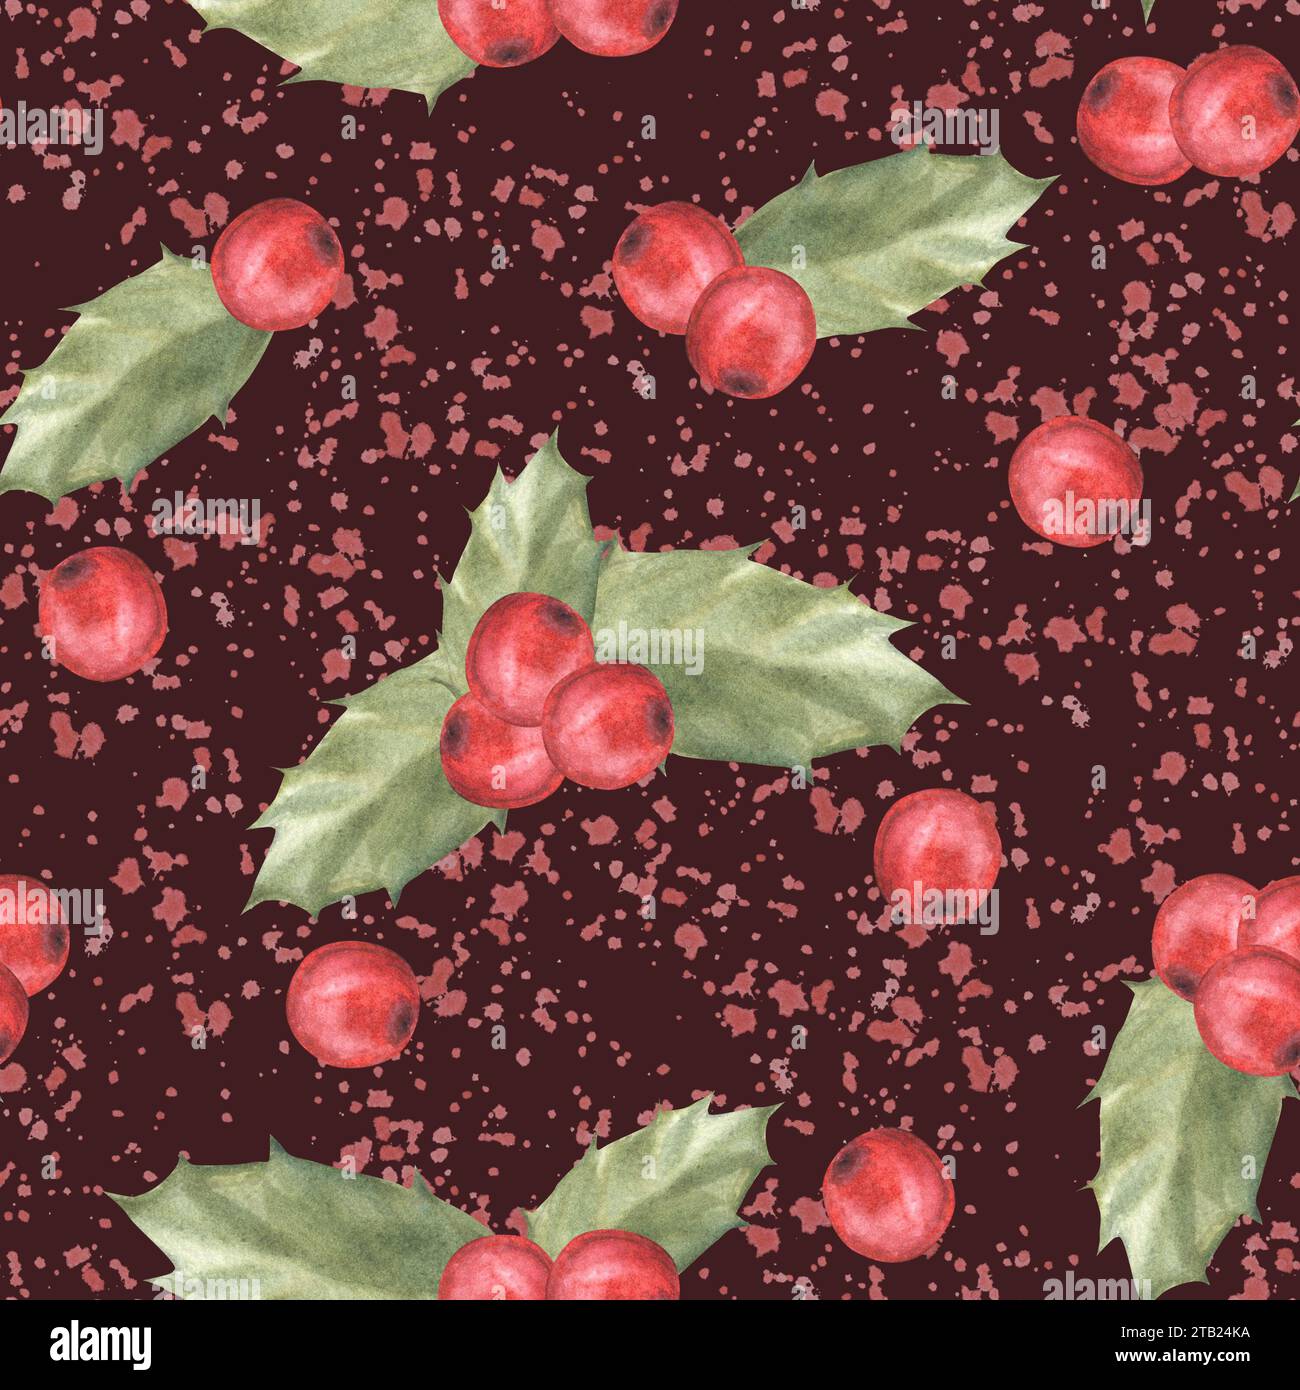 Aquarellgemalte Illustration von roten stechpalmenblättern und Beeren mit Spritzern. Nahtloses Design für Weihnachten oder Neujahr, Geschenkverpackung Stockfoto